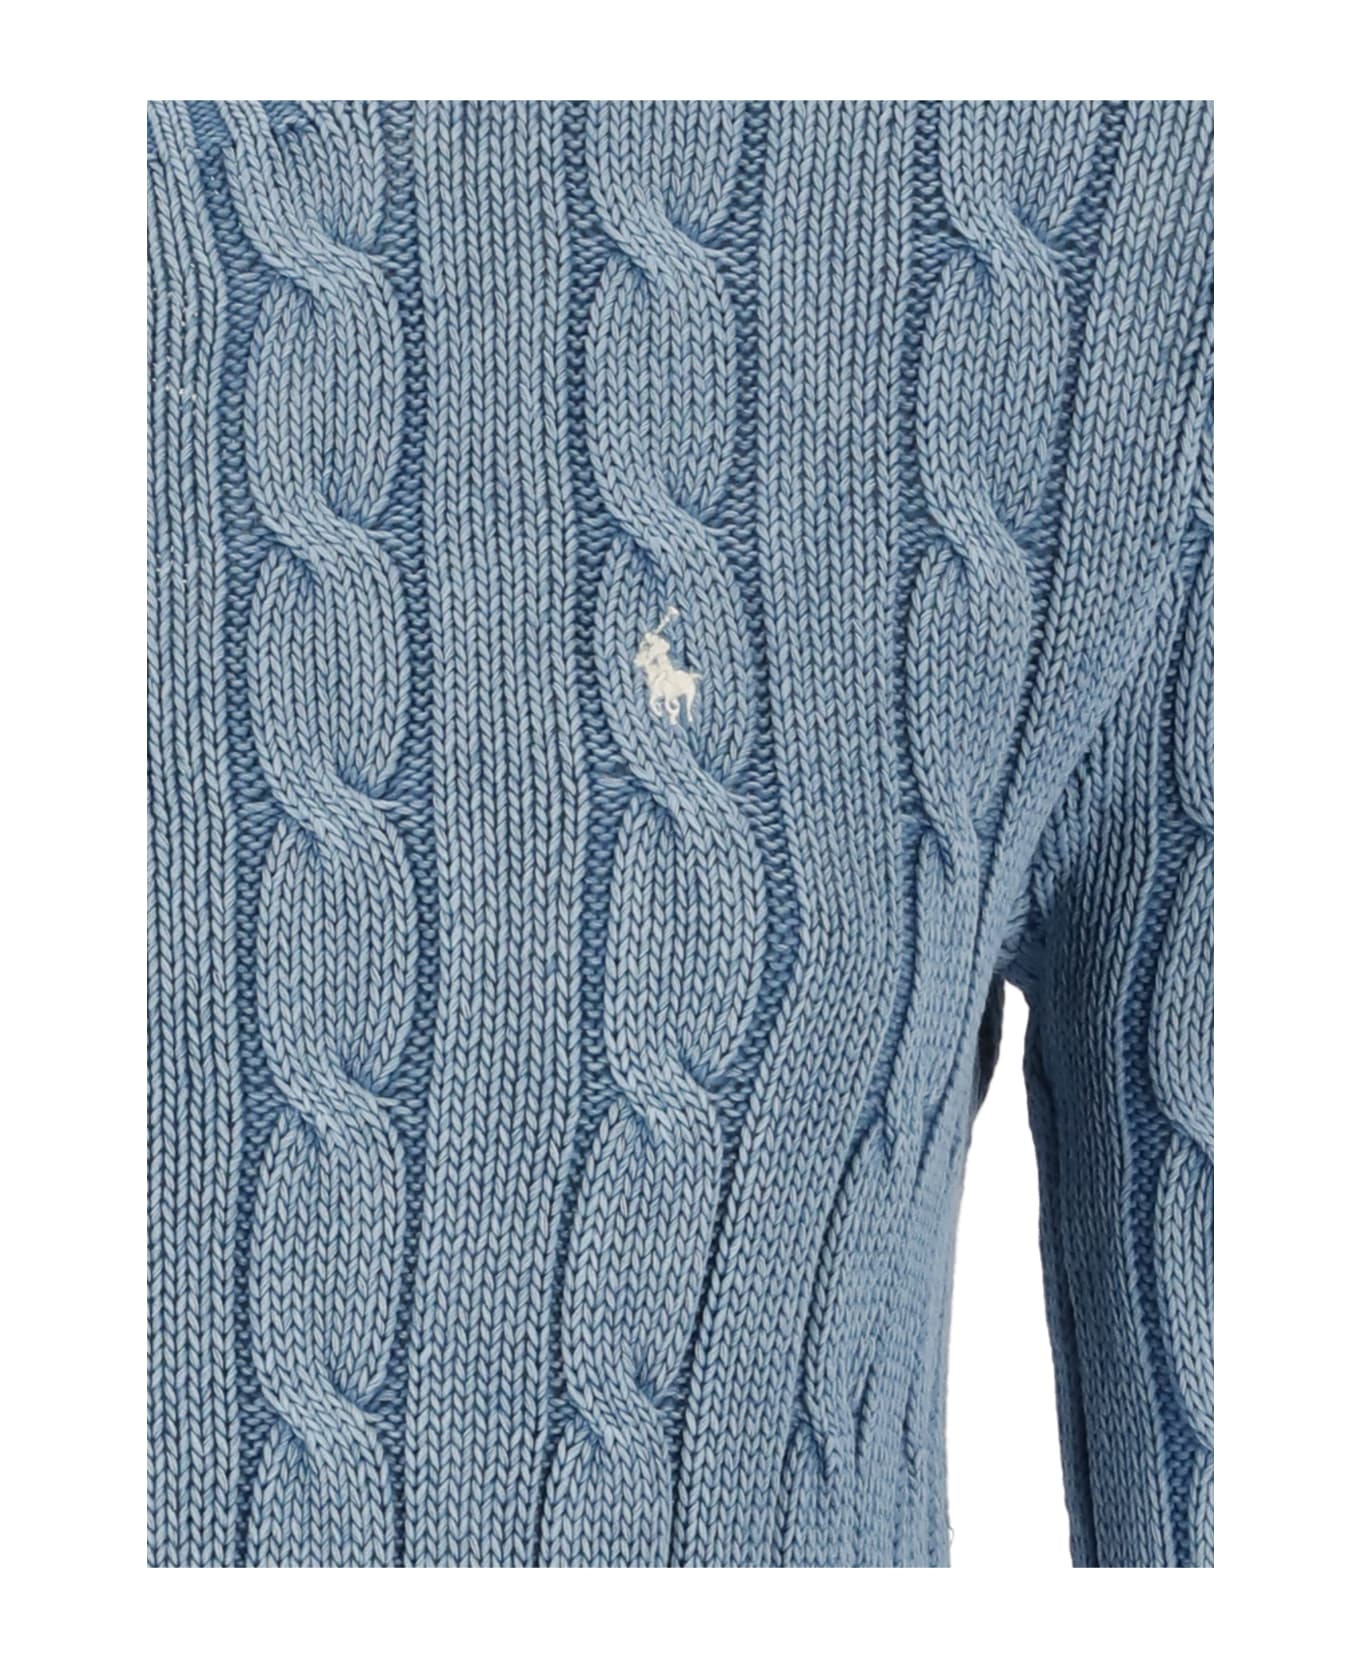 Polo Ralph Lauren Cotton Sweater - Light Blue